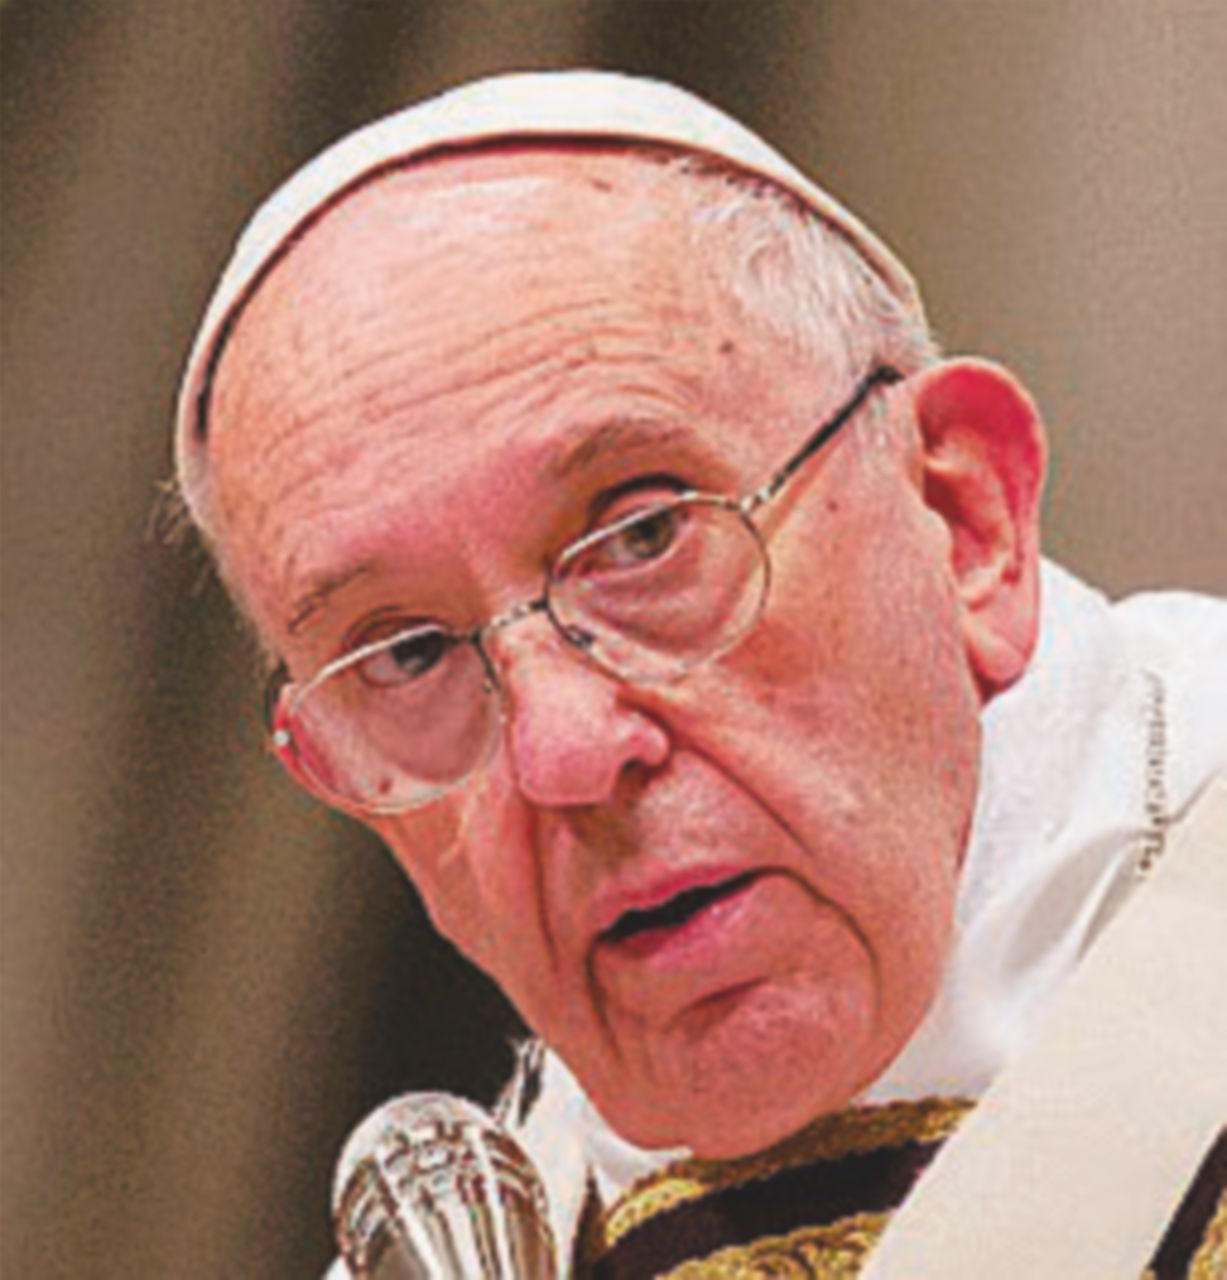 Copertina di Ordine di Malta, il Papa rimette in sella il Barone del condom